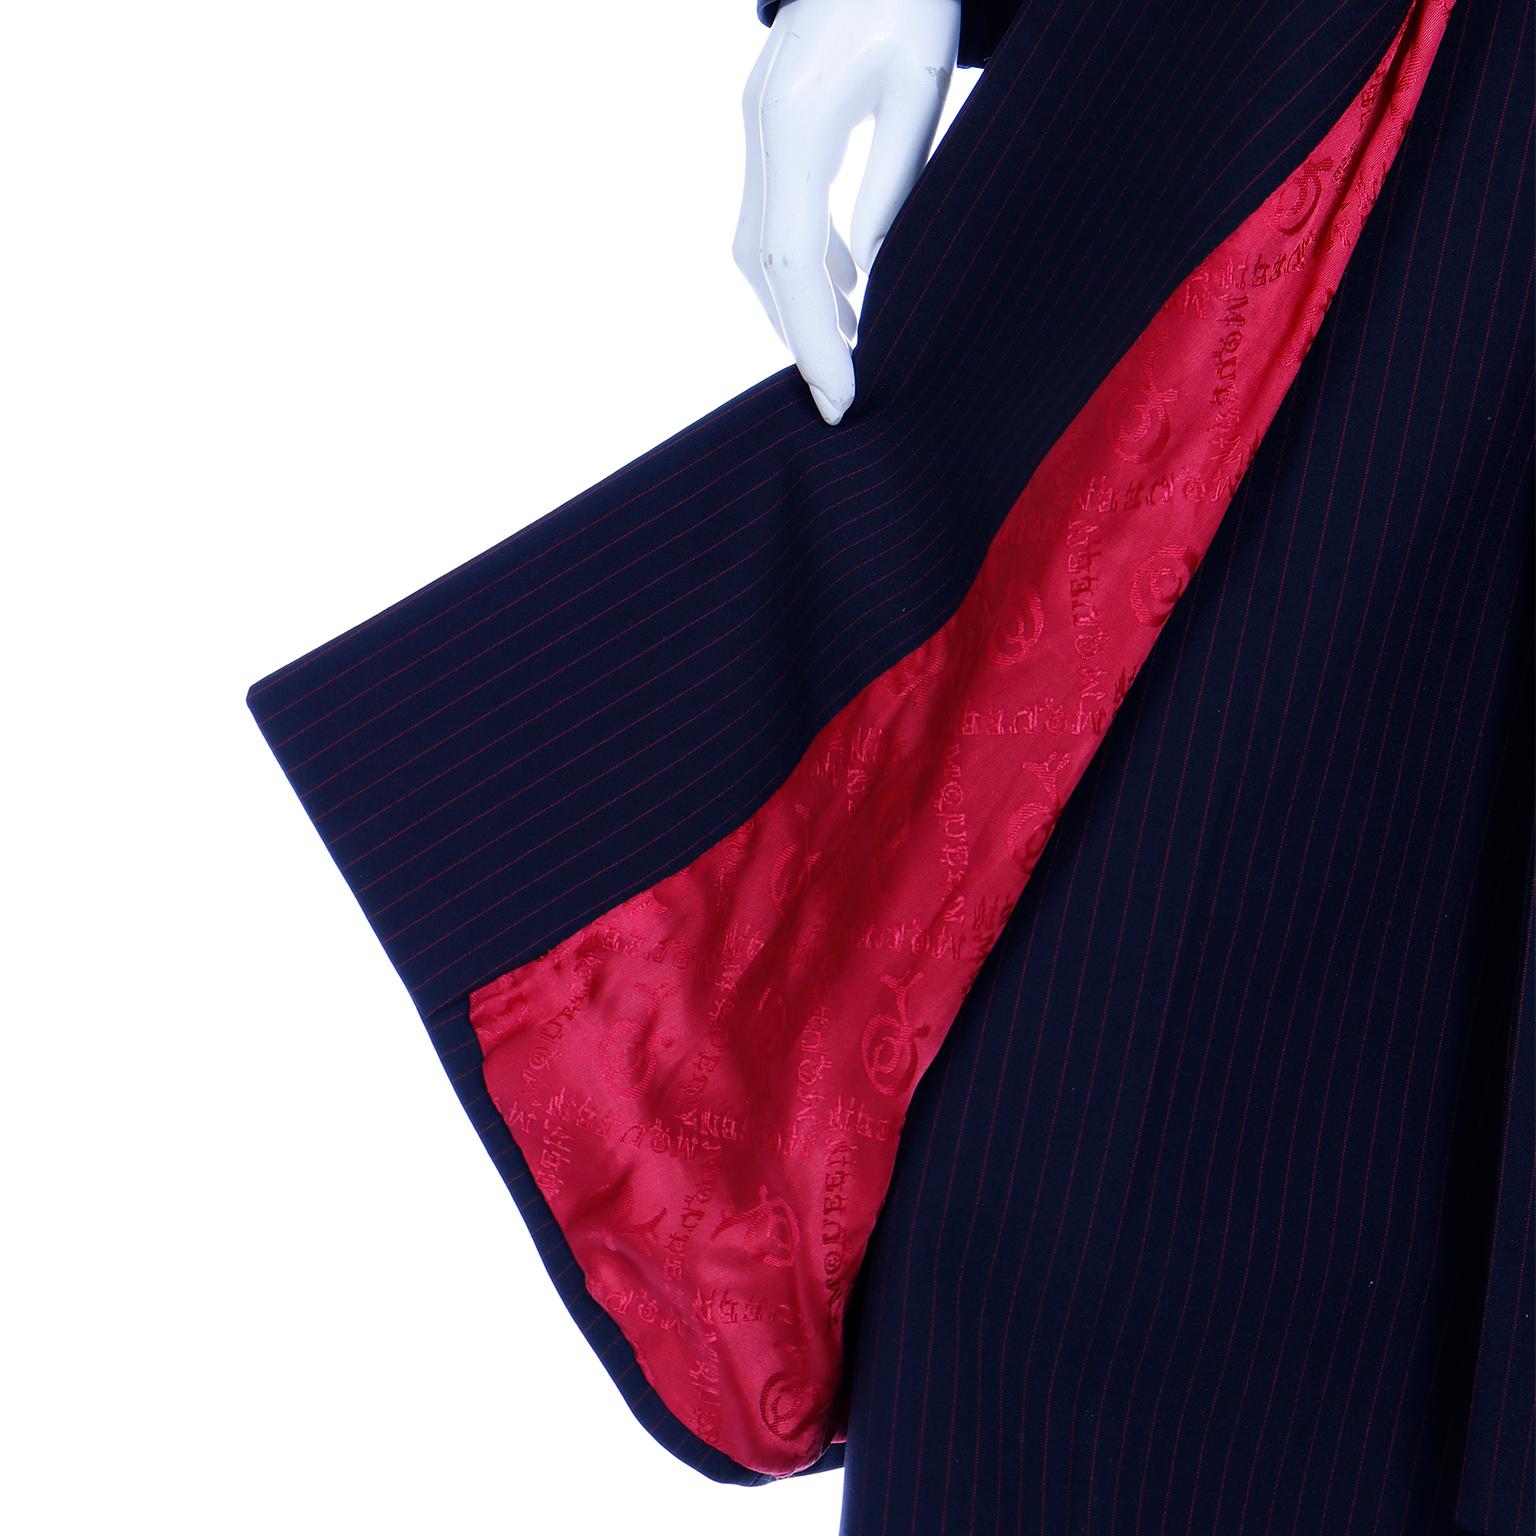 1998 Alexander McQueen Runway Joan Black & Red Pinstripe Long Coat Trouser Suit 5